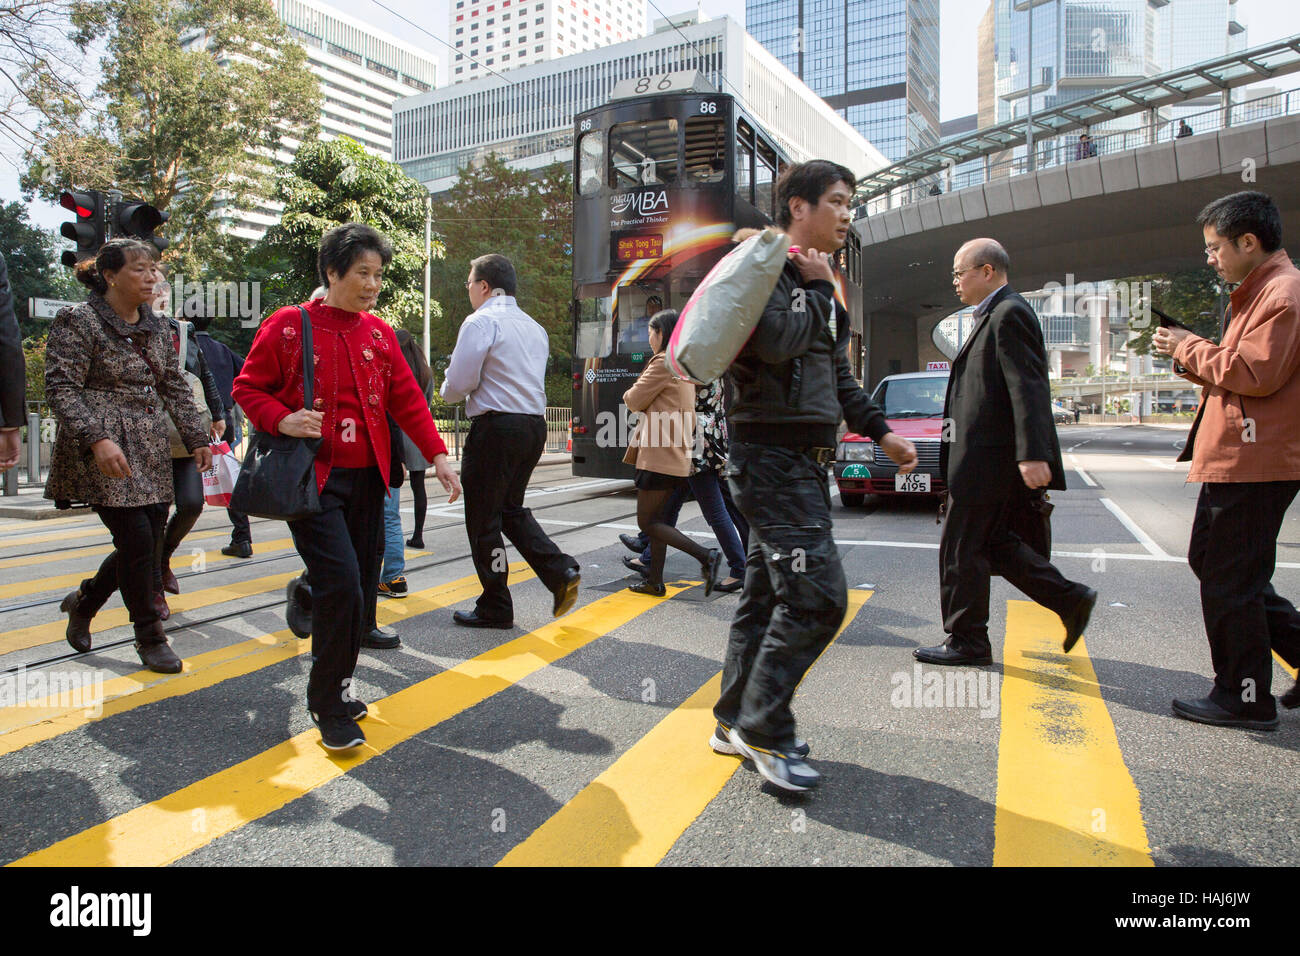 China, Hong Kong, Central, busy street Stock Photo